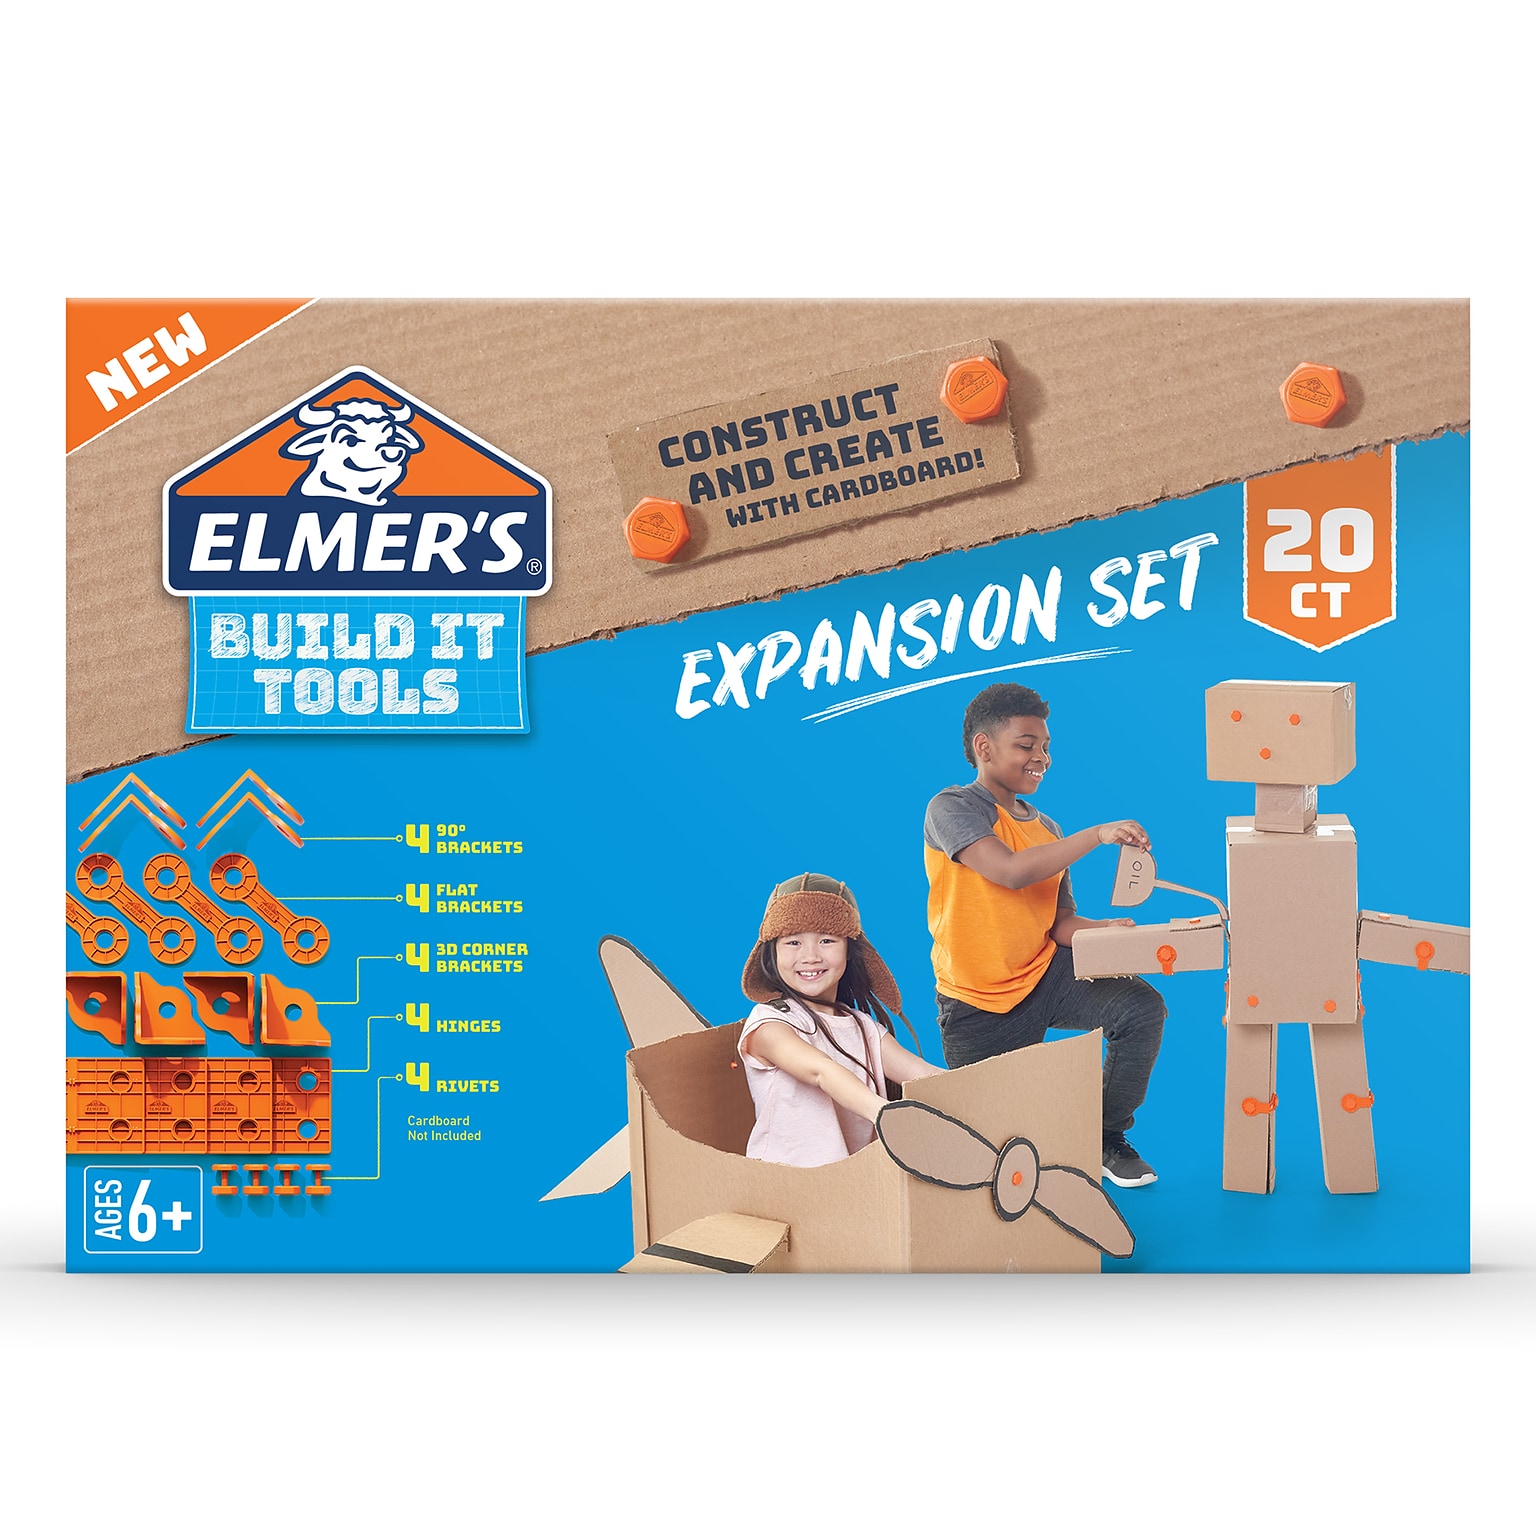 Elmers Build It Tools Expansion Set, Tan, 20 Pieces (ELM2153297)